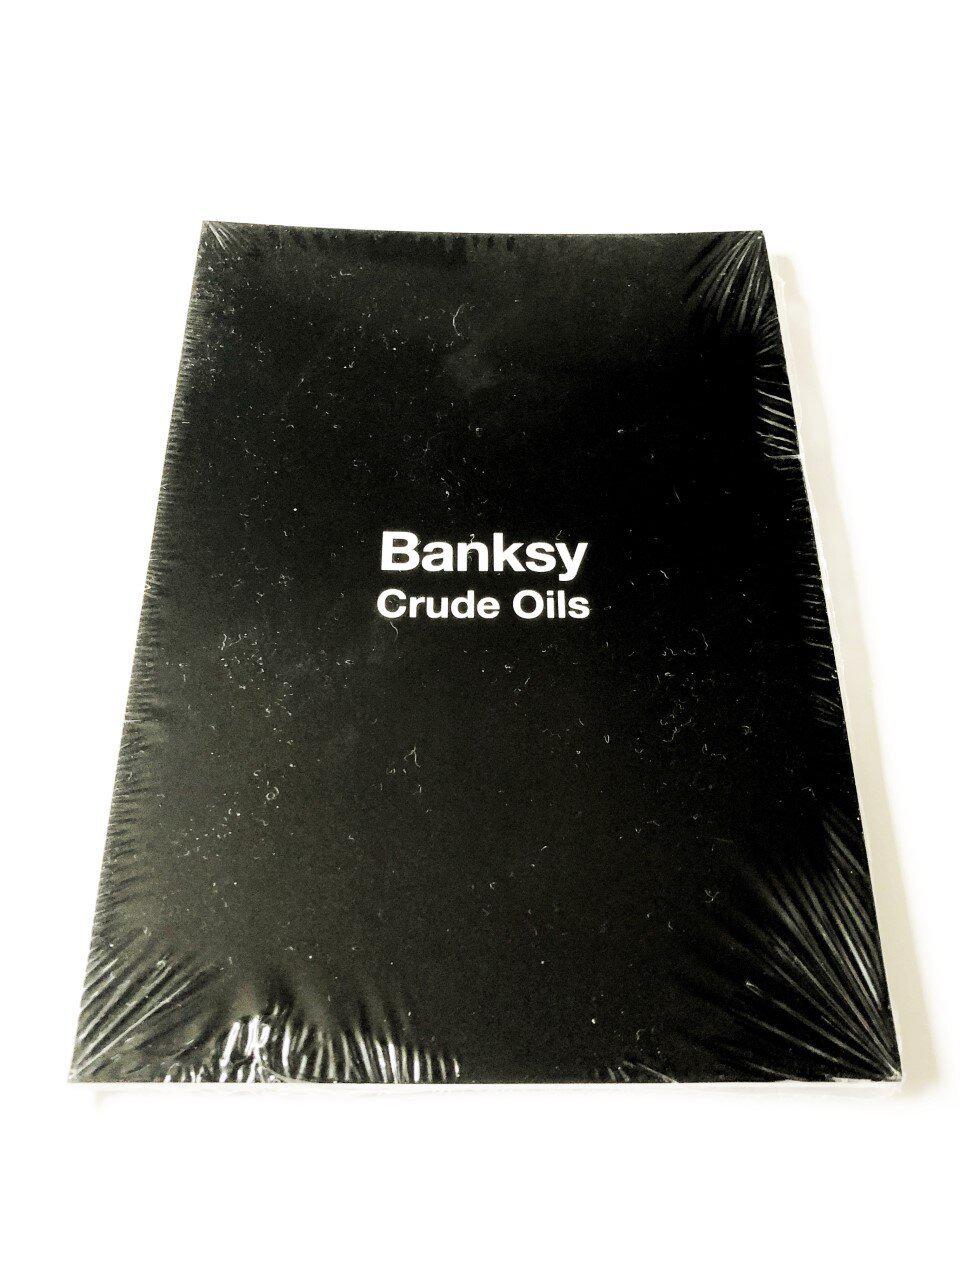 Banksy - Crude Oils postcard set (complete sealed set of 10) for Sale ...